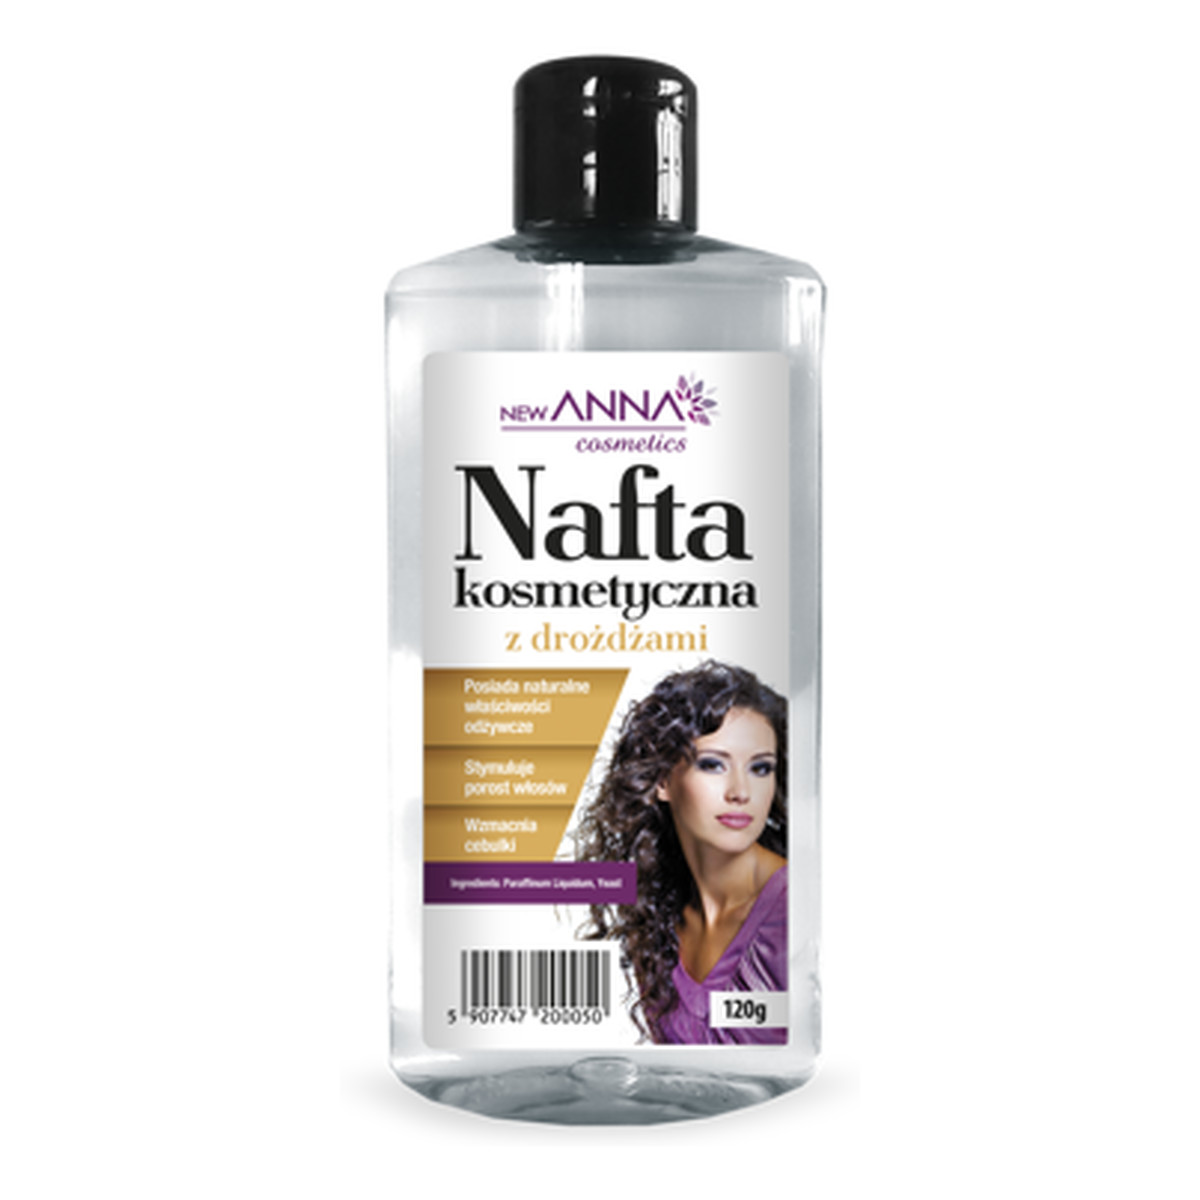 Anna Cosmetics Nafta kosmetyczna z drożdżami 120g